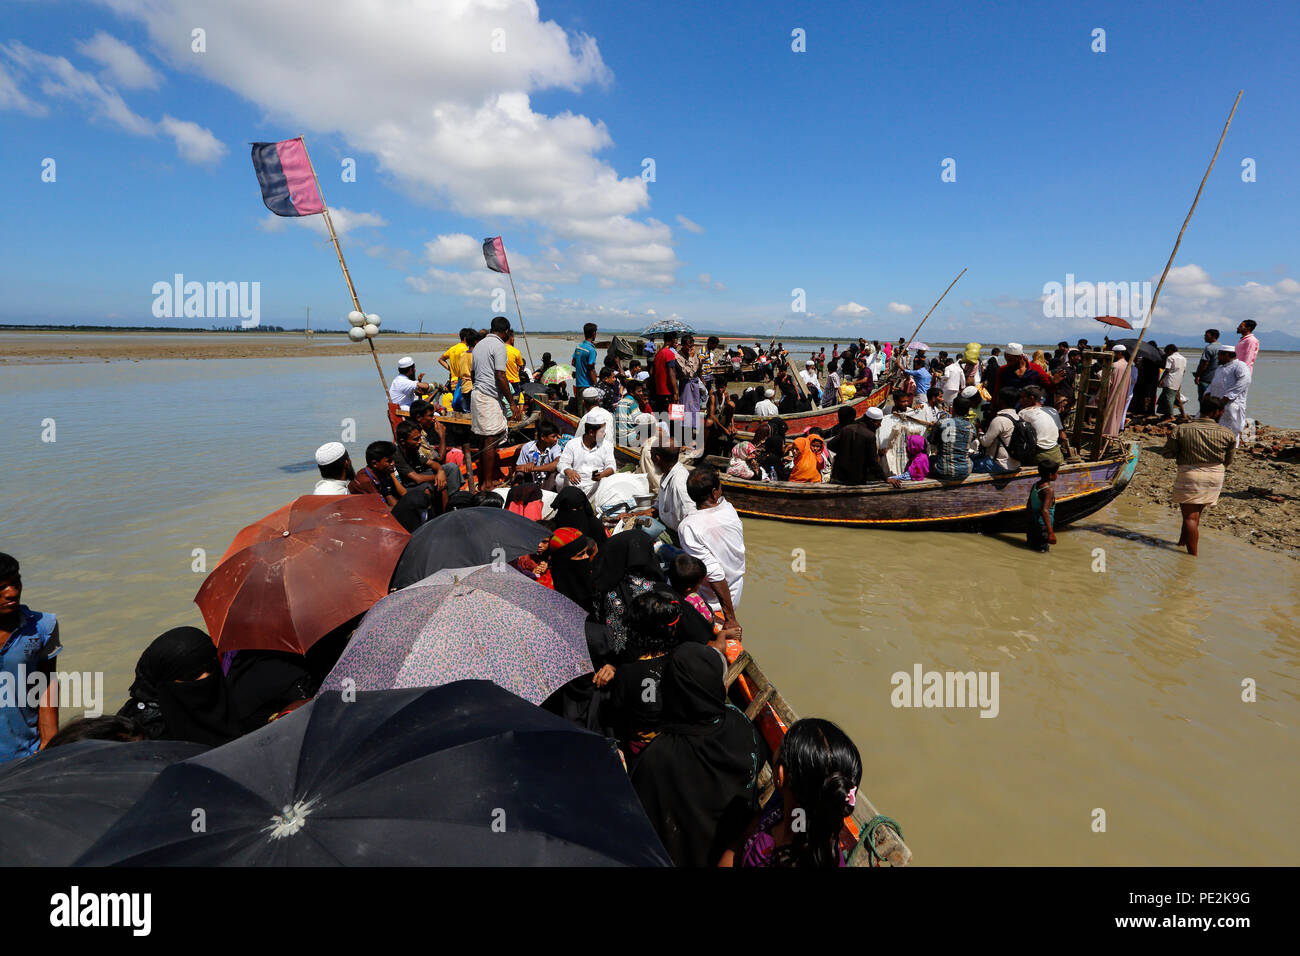 Réfugiés Rohingyas arrivés à Shah Porir Dweep de Myanmar traversant le fleuve Naf par bateau. Teknaf, Cox's Bazar (Bangladesh). Banque D'Images